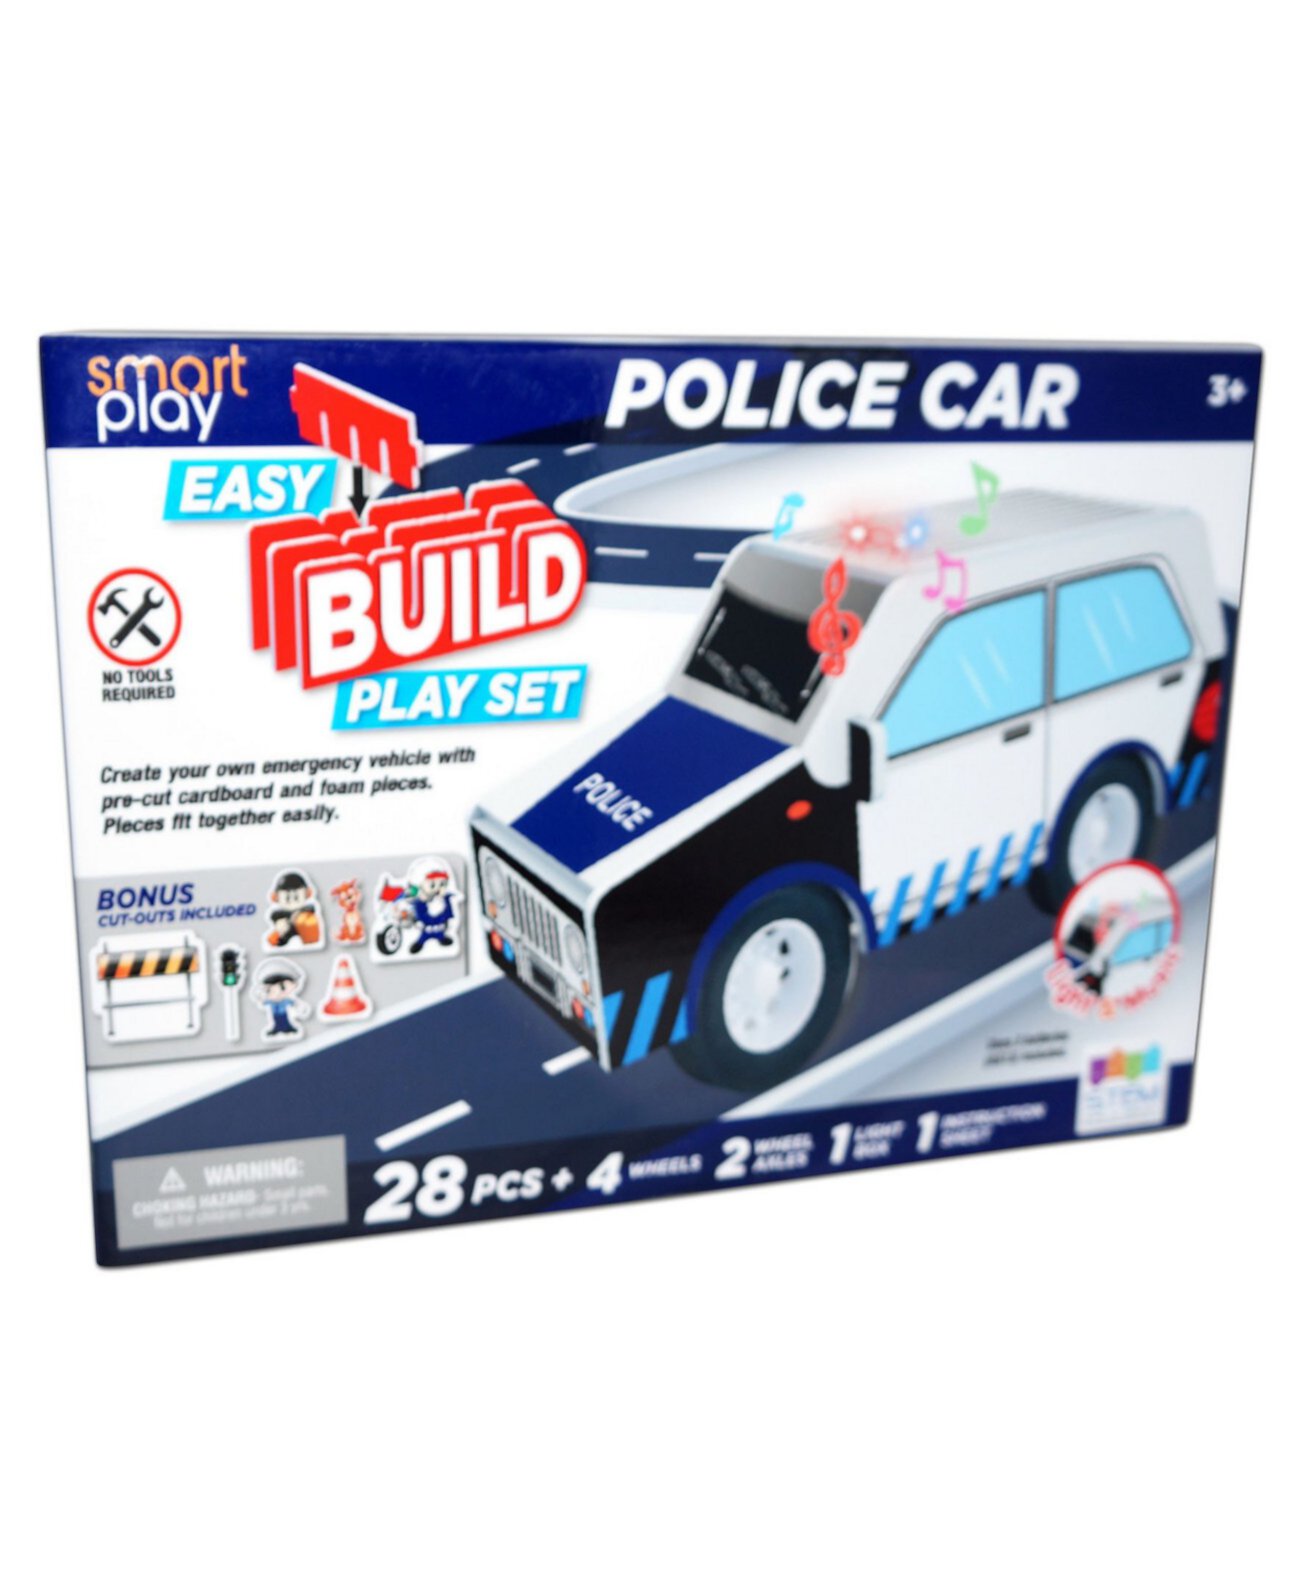 Простой набор для сборки и игр со светом и звуком, полицейская машина, 36 предметов Smart Play